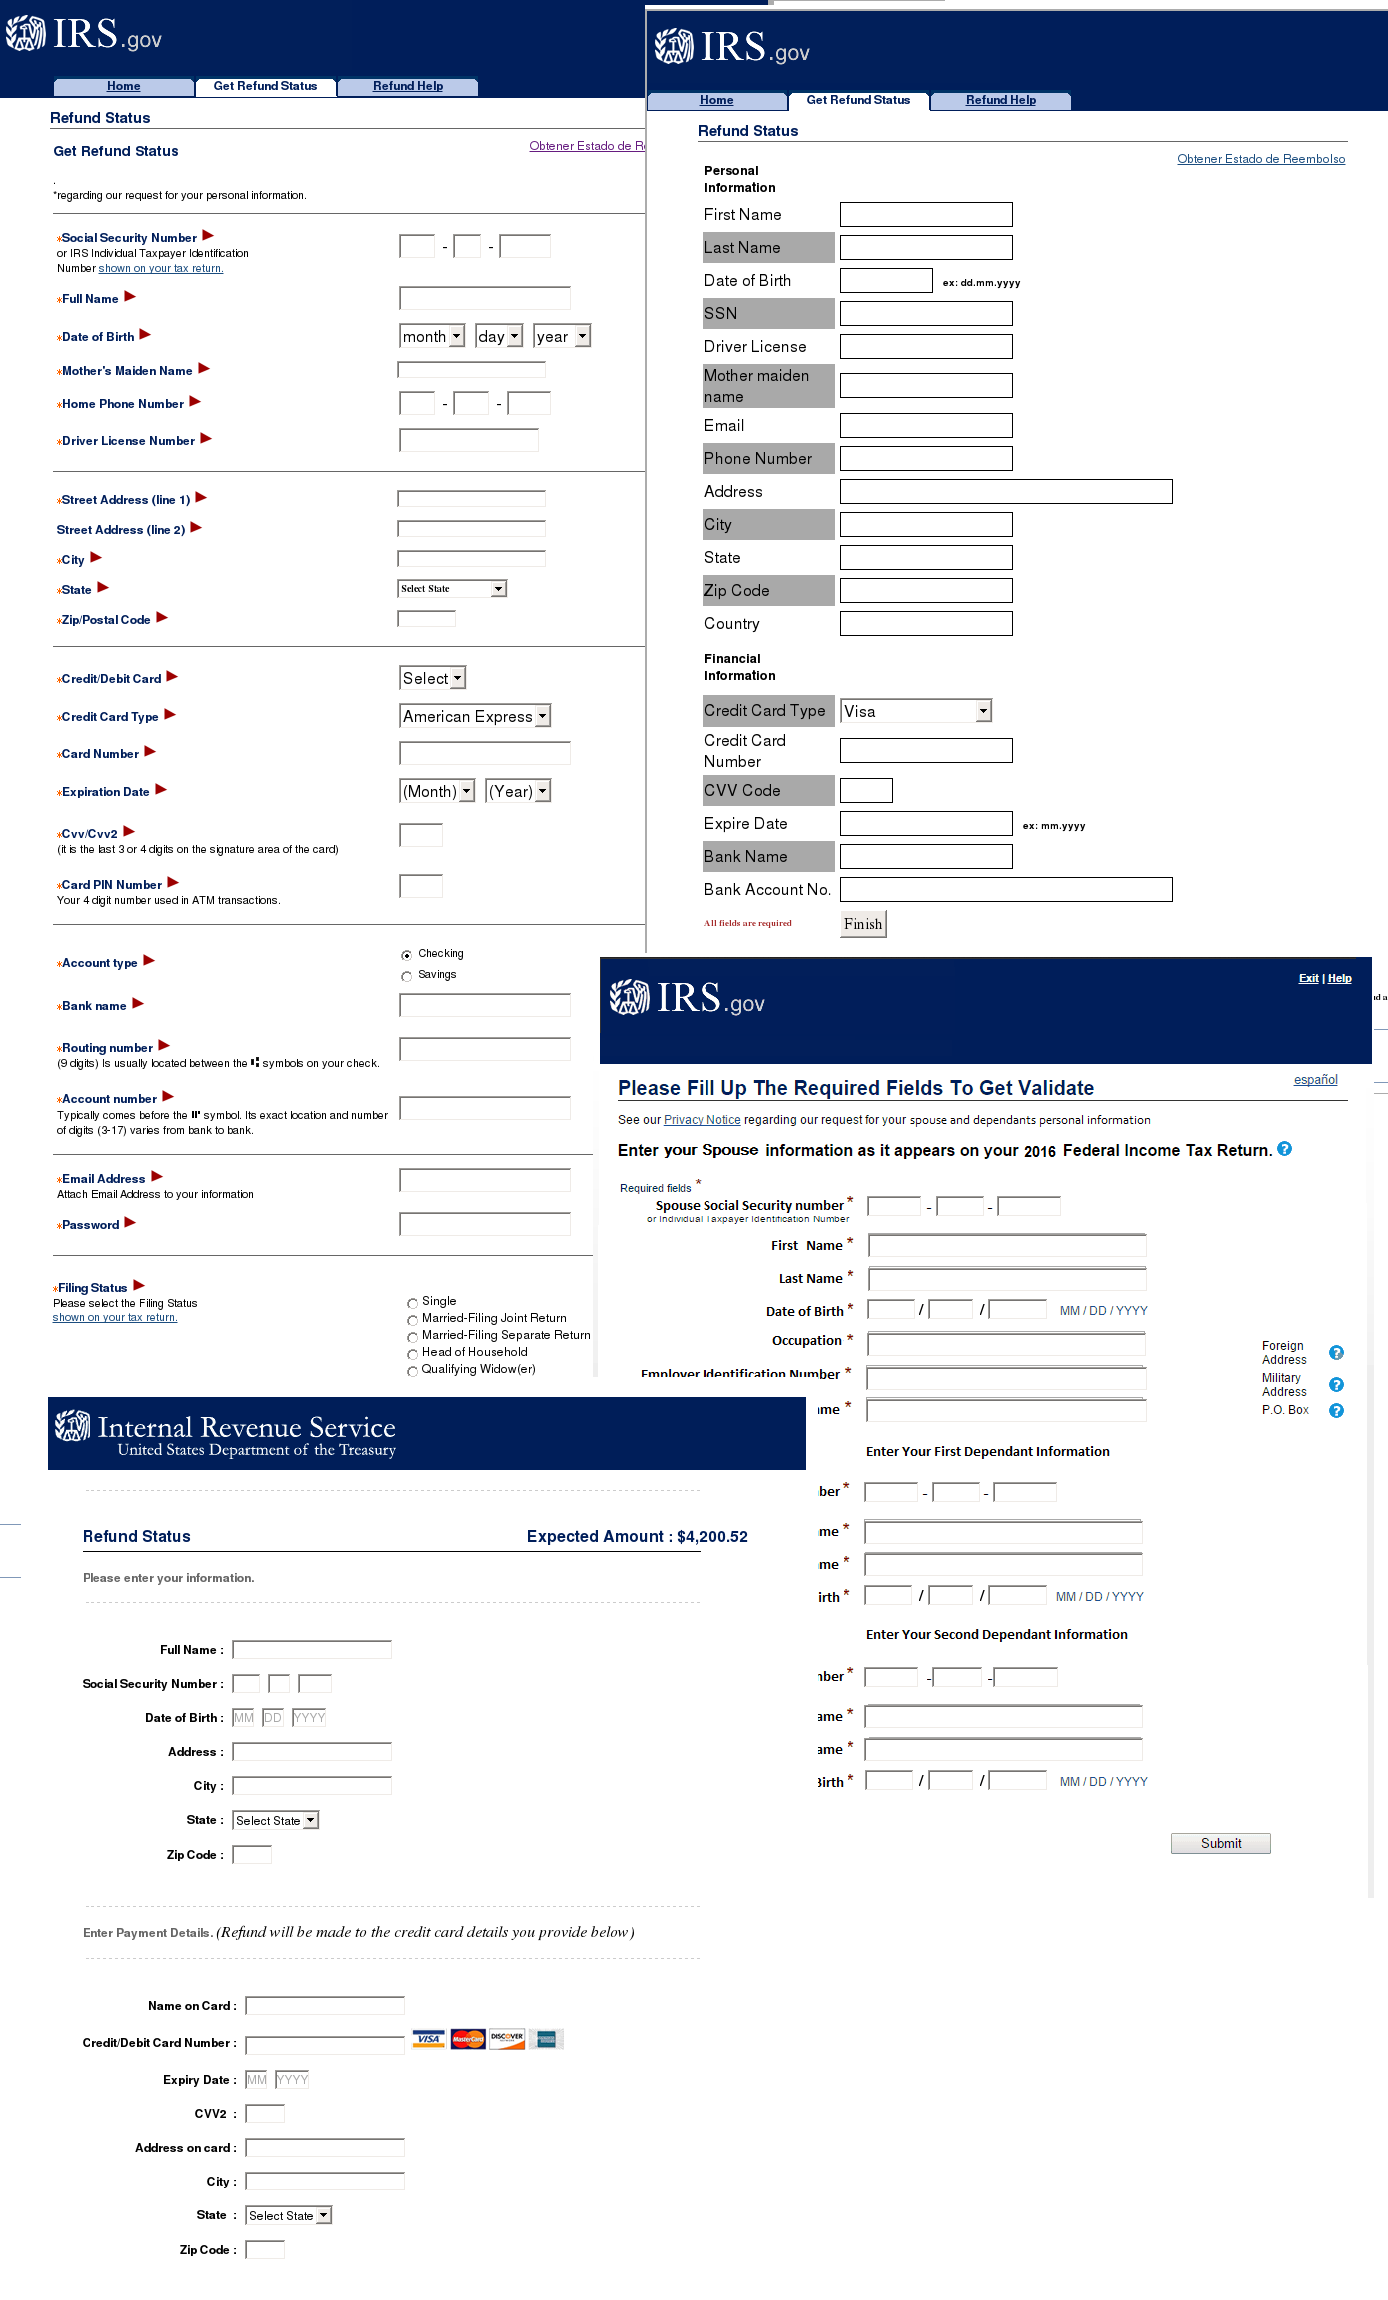 Підроблені сторінки IRS, що пропонують заповнити форму для повернення грошей